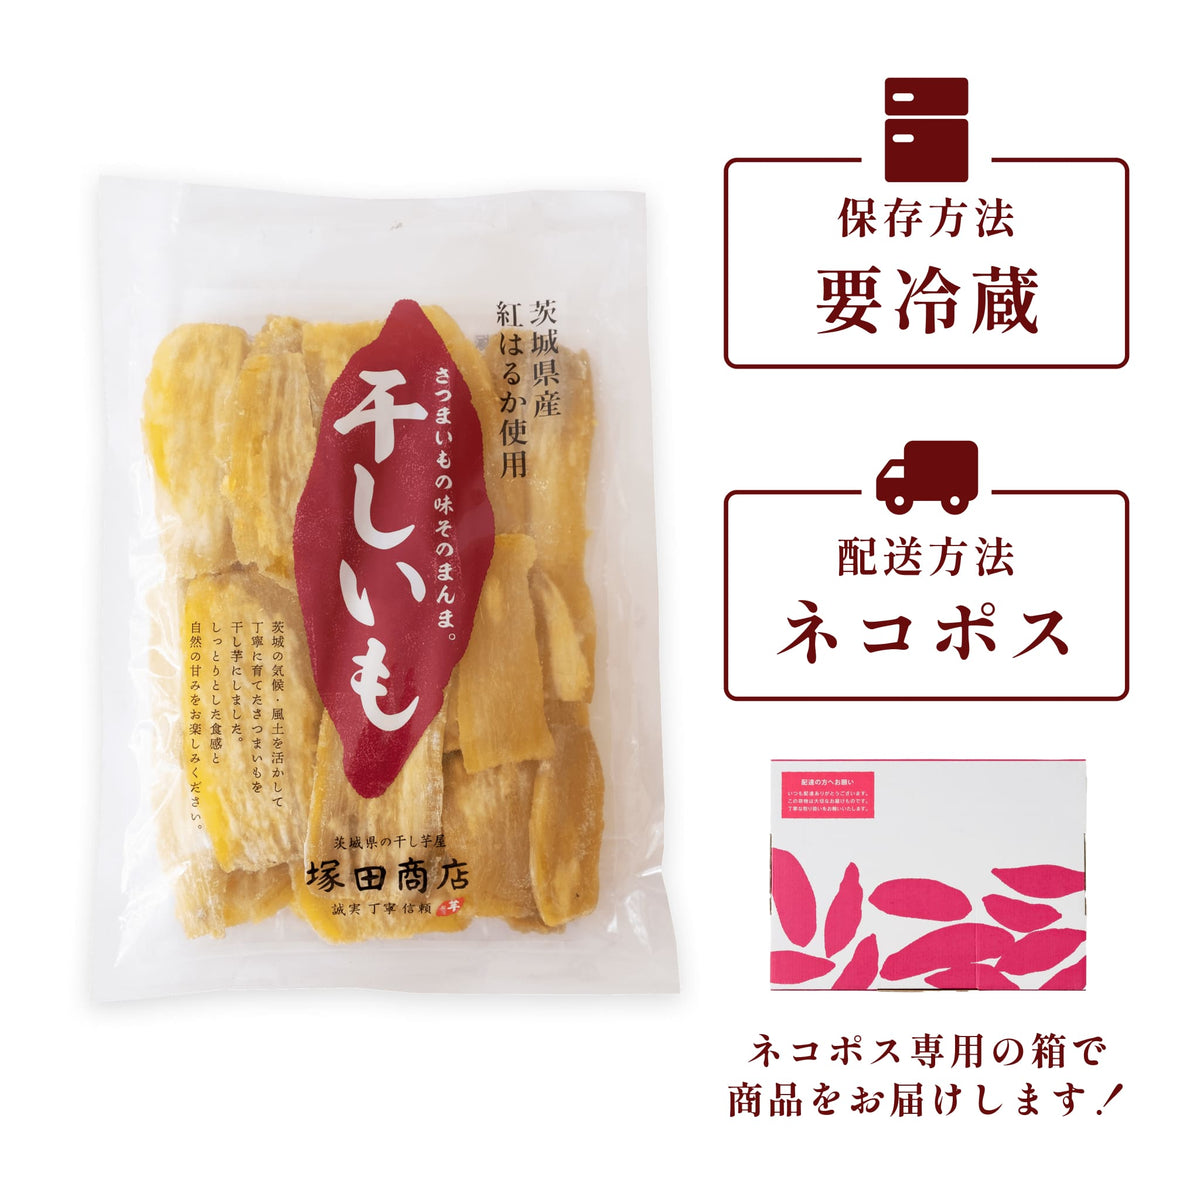 【日本で買】干し芋 10kg シロタ 小 茨城県産 紅はるか その他 加工食品